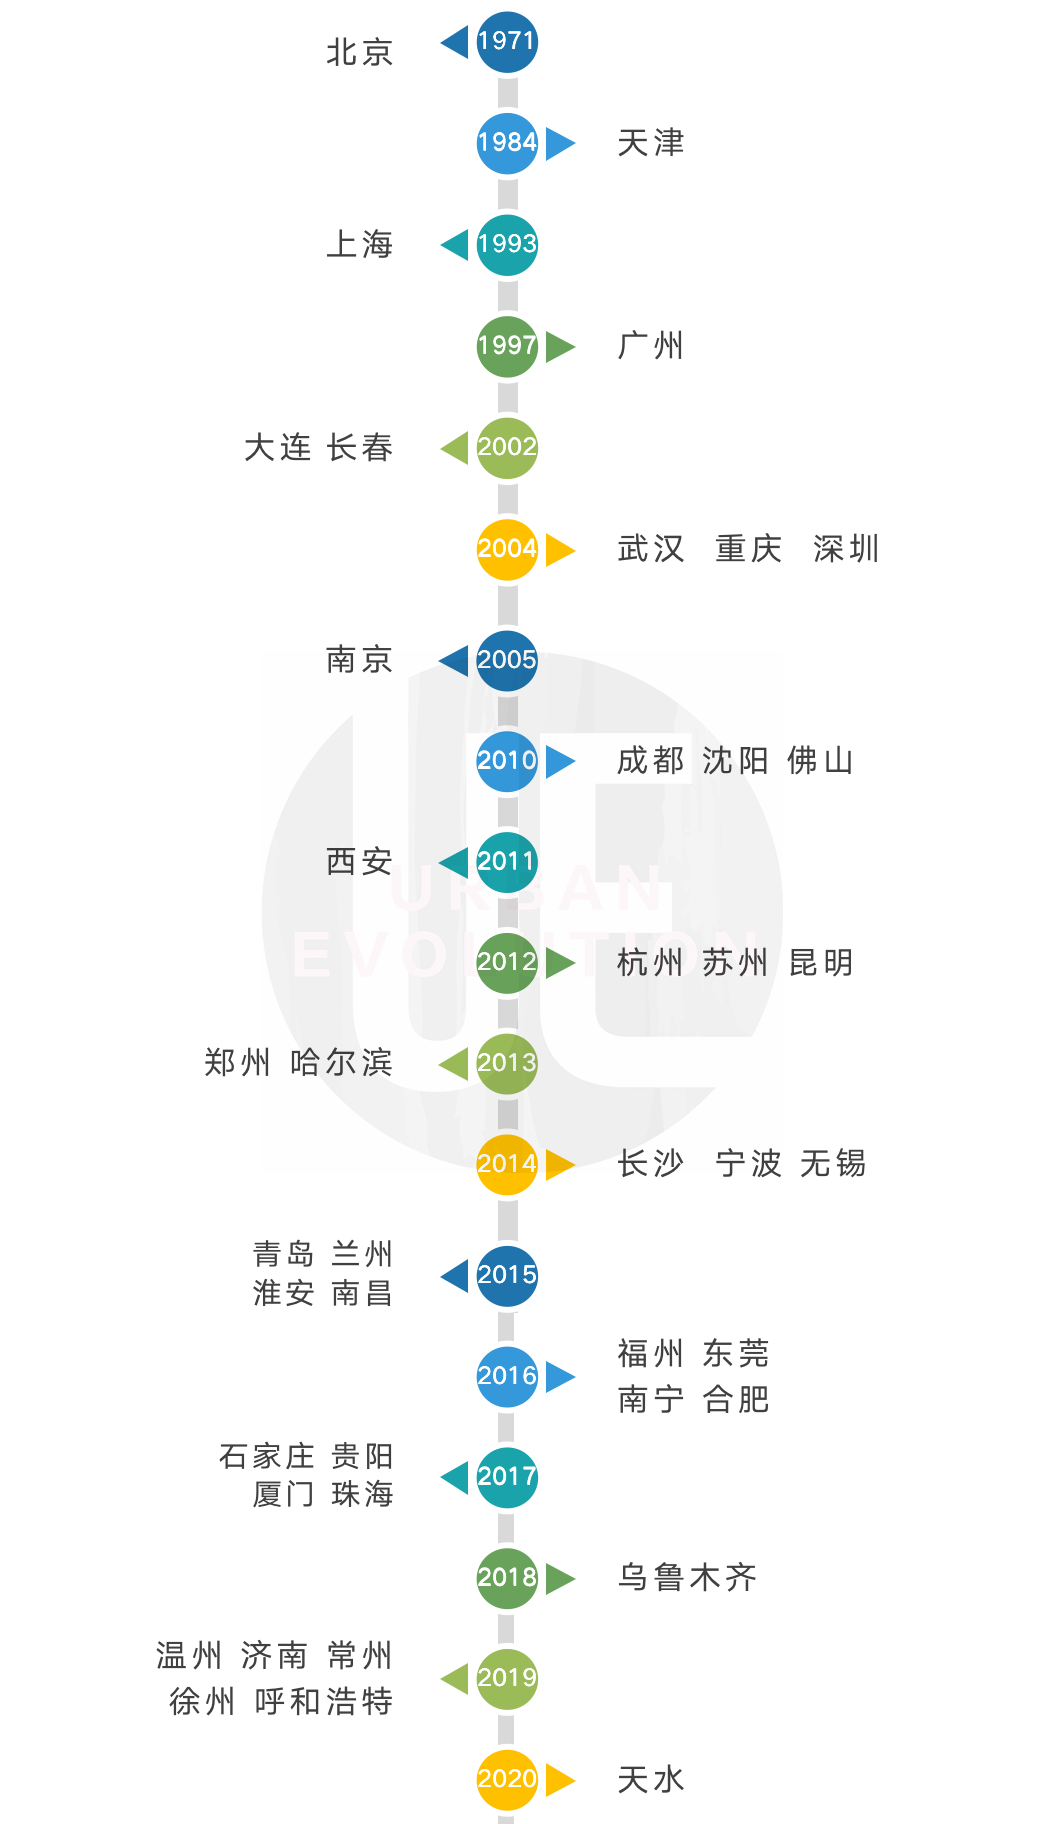 主要城市轨道交通开通时间  图源：城市进化论